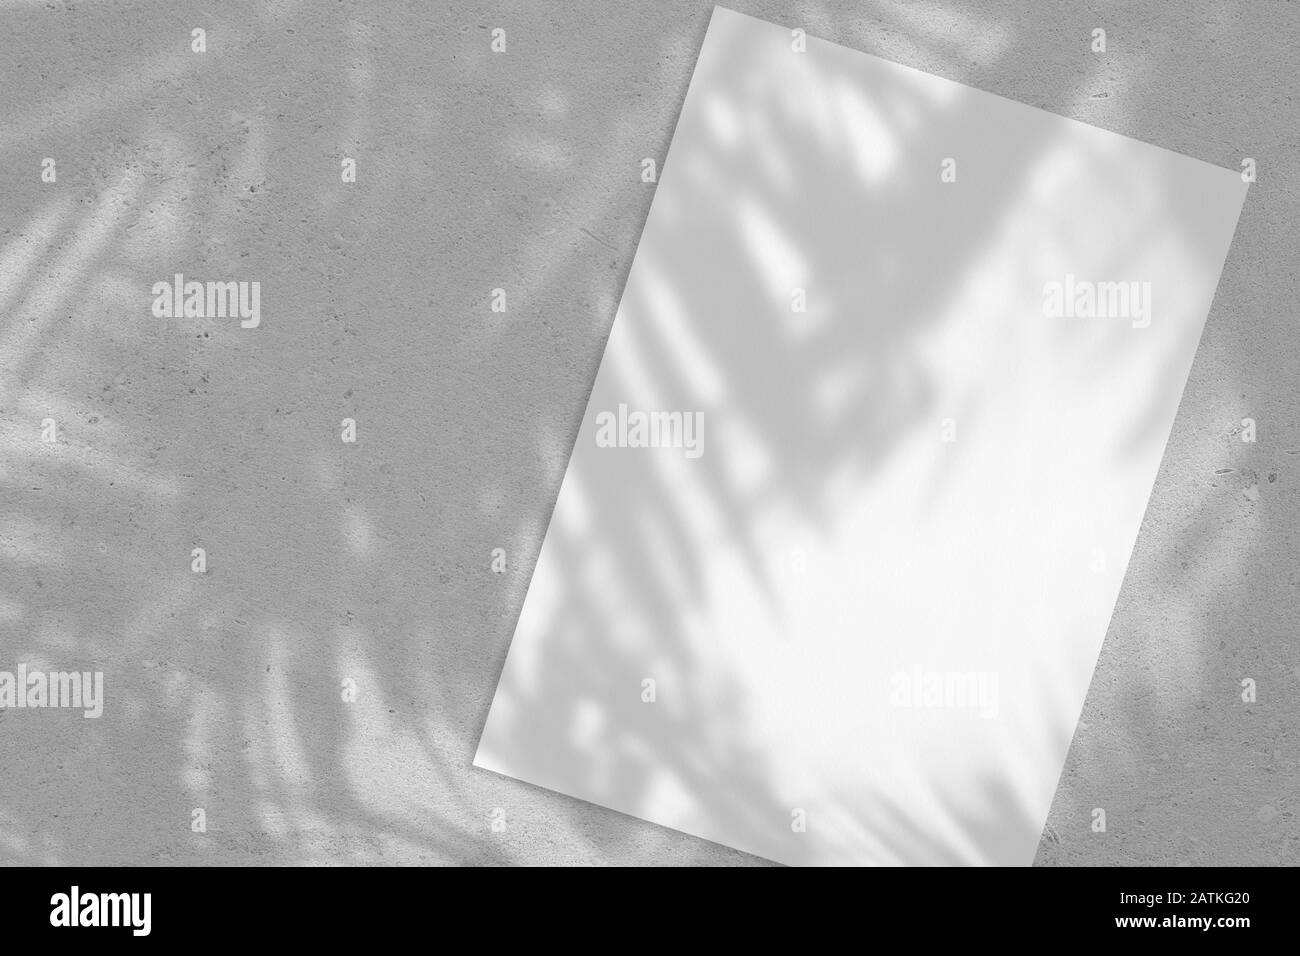 Affiche rectangulaire blanche vide ou maquette de carte avec ombres à feuilles de palmier Banque D'Images